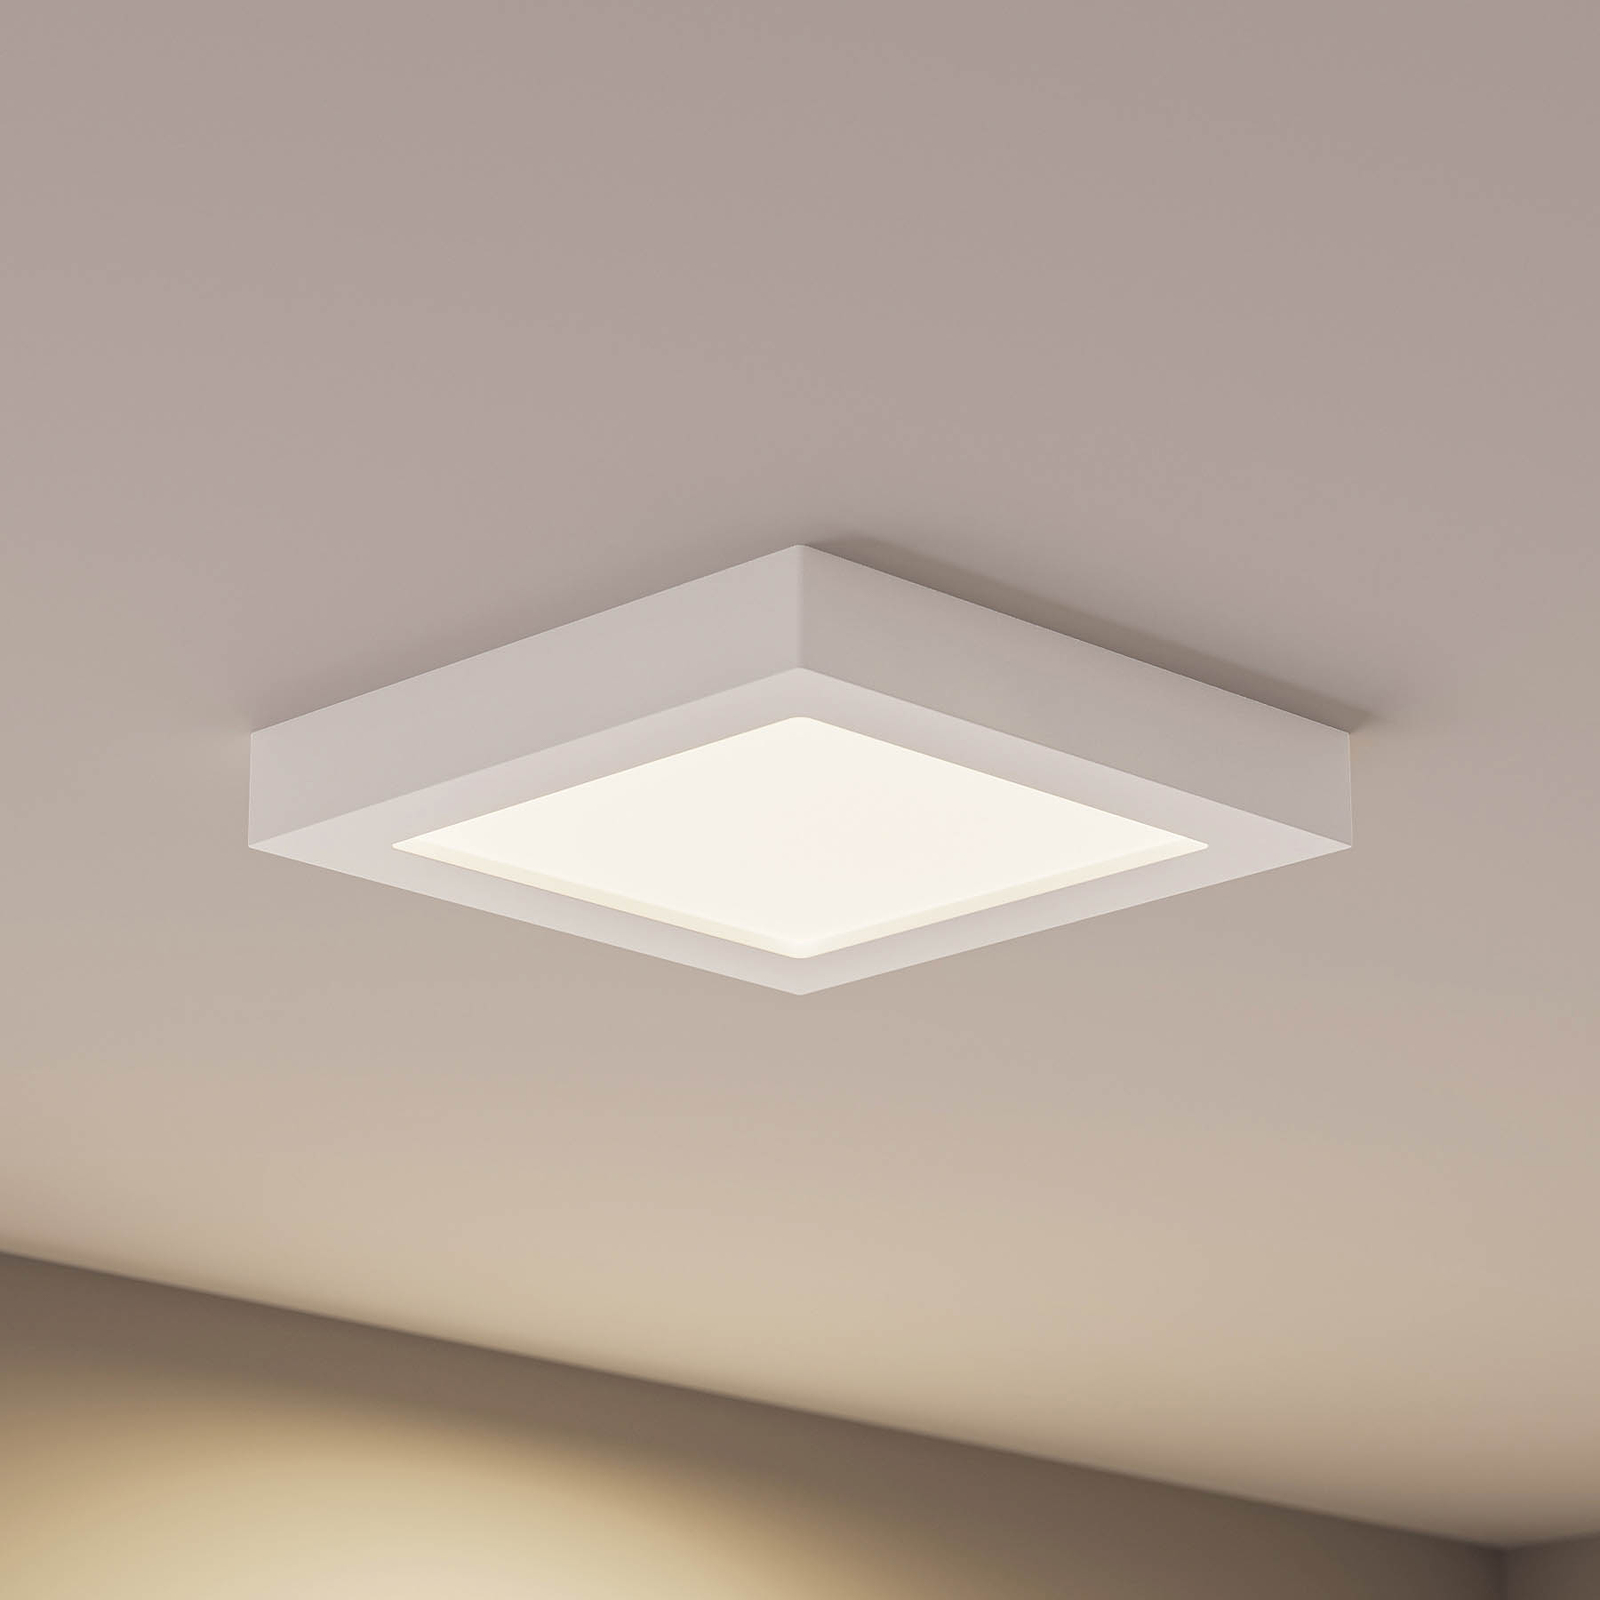 Prios Alette plafonnier LED, blanc, 22,7 cm 24 W